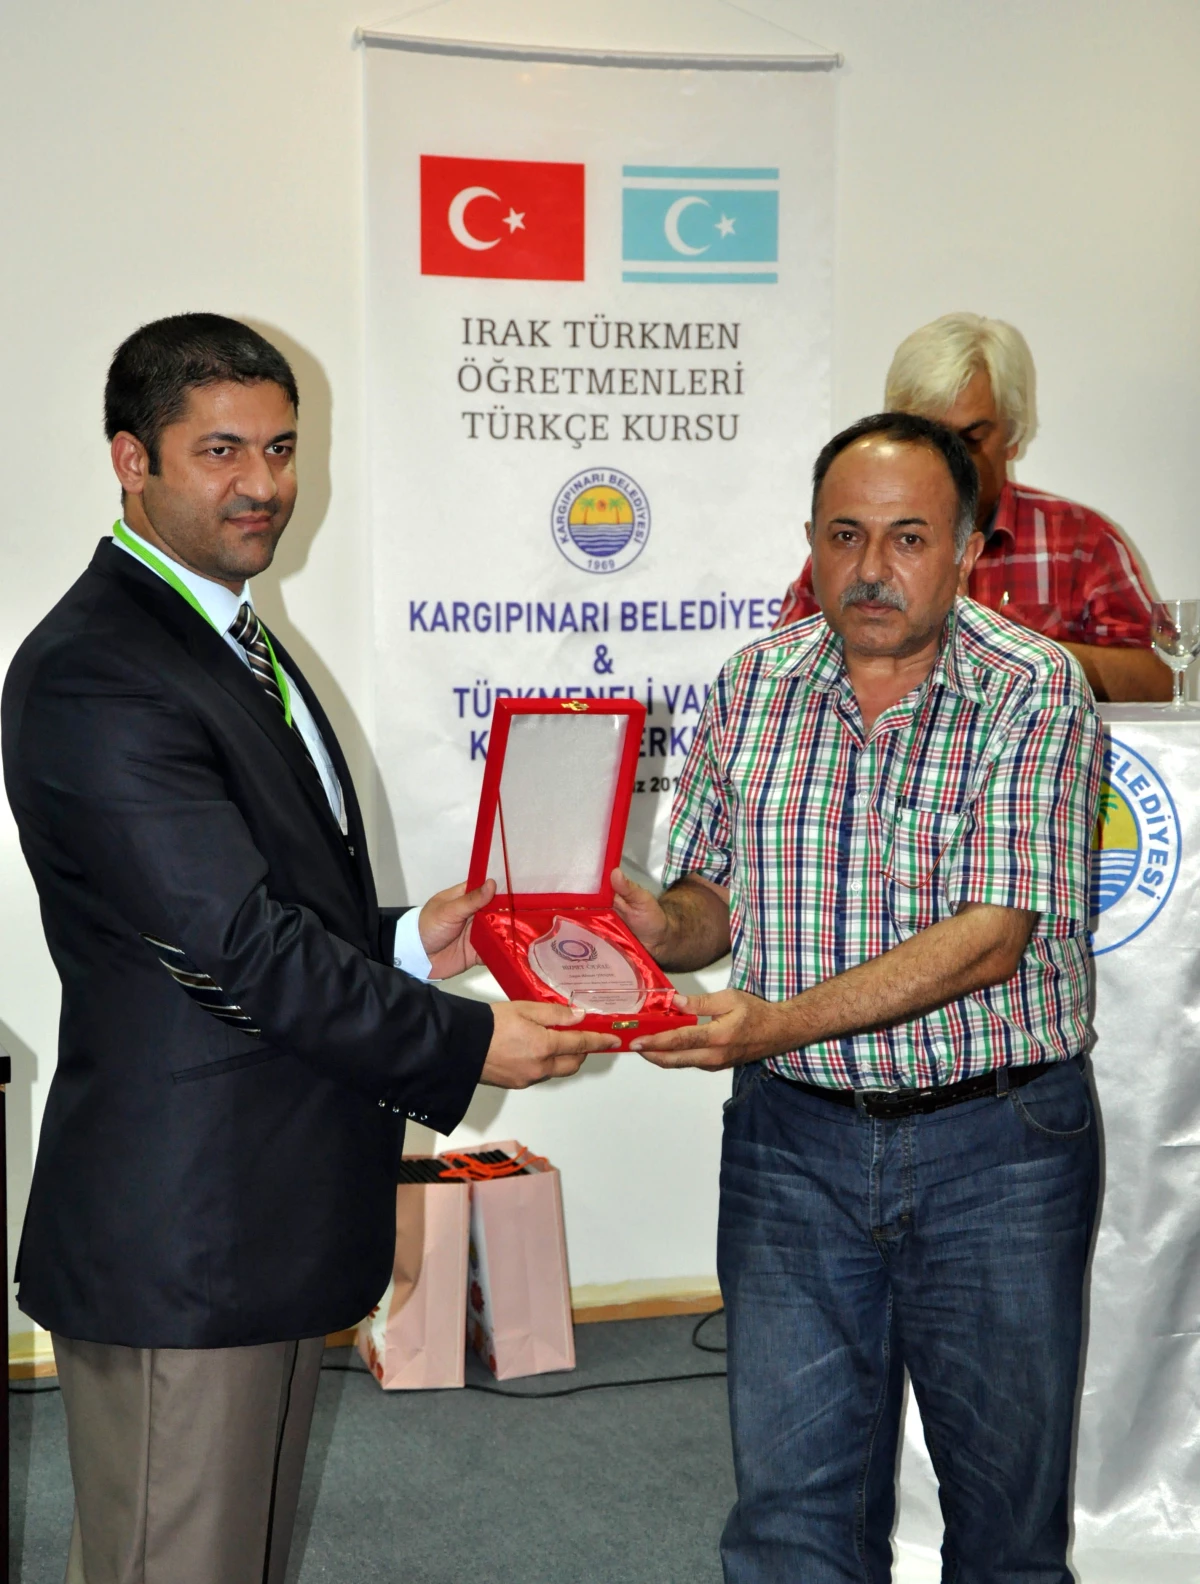 Türkmen Öğretmenler Sertifika Aldı